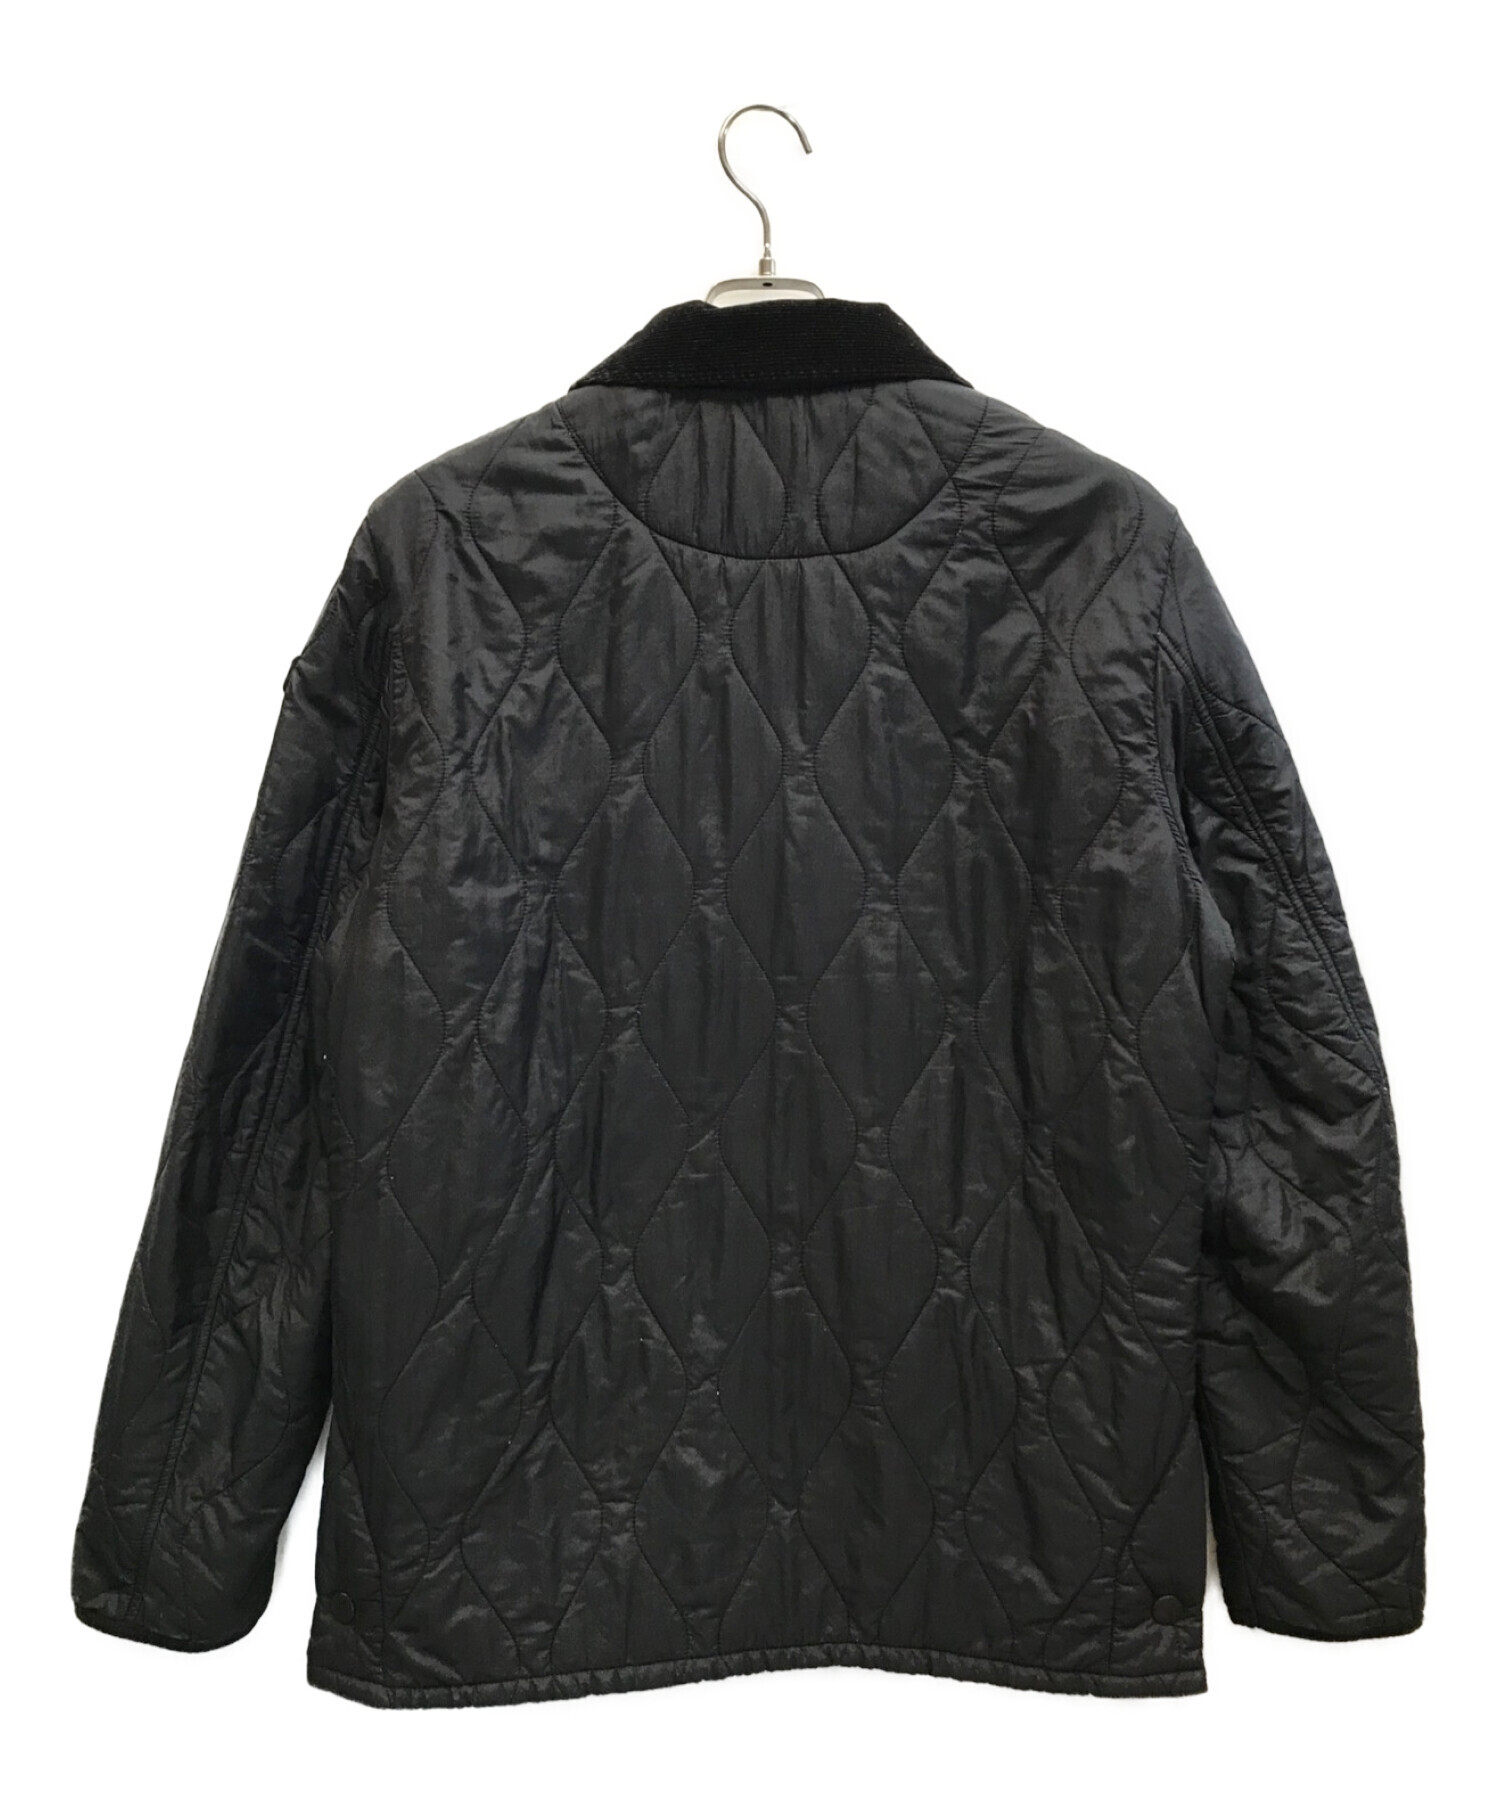 Barbour (バブアー) キルティングジャケット ブラック サイズ:M